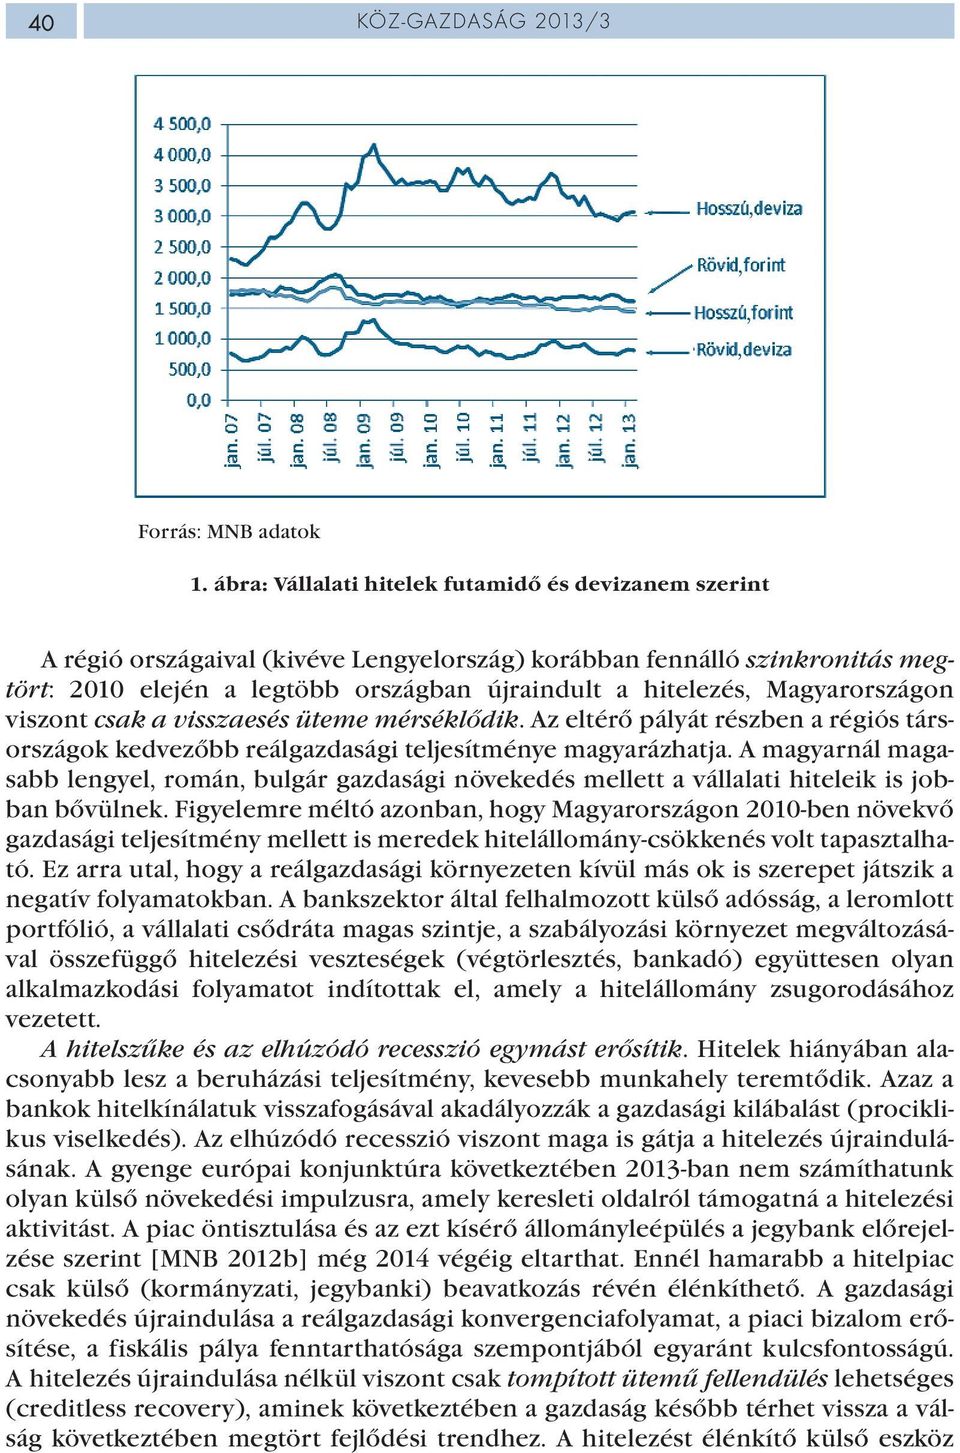 Magyarországon viszont csak a visszaesés üteme mérséklődik. Az eltérő pályát részben a régiós társországok kedvezőbb reálgazdasági teljesítménye magyarázhatja.